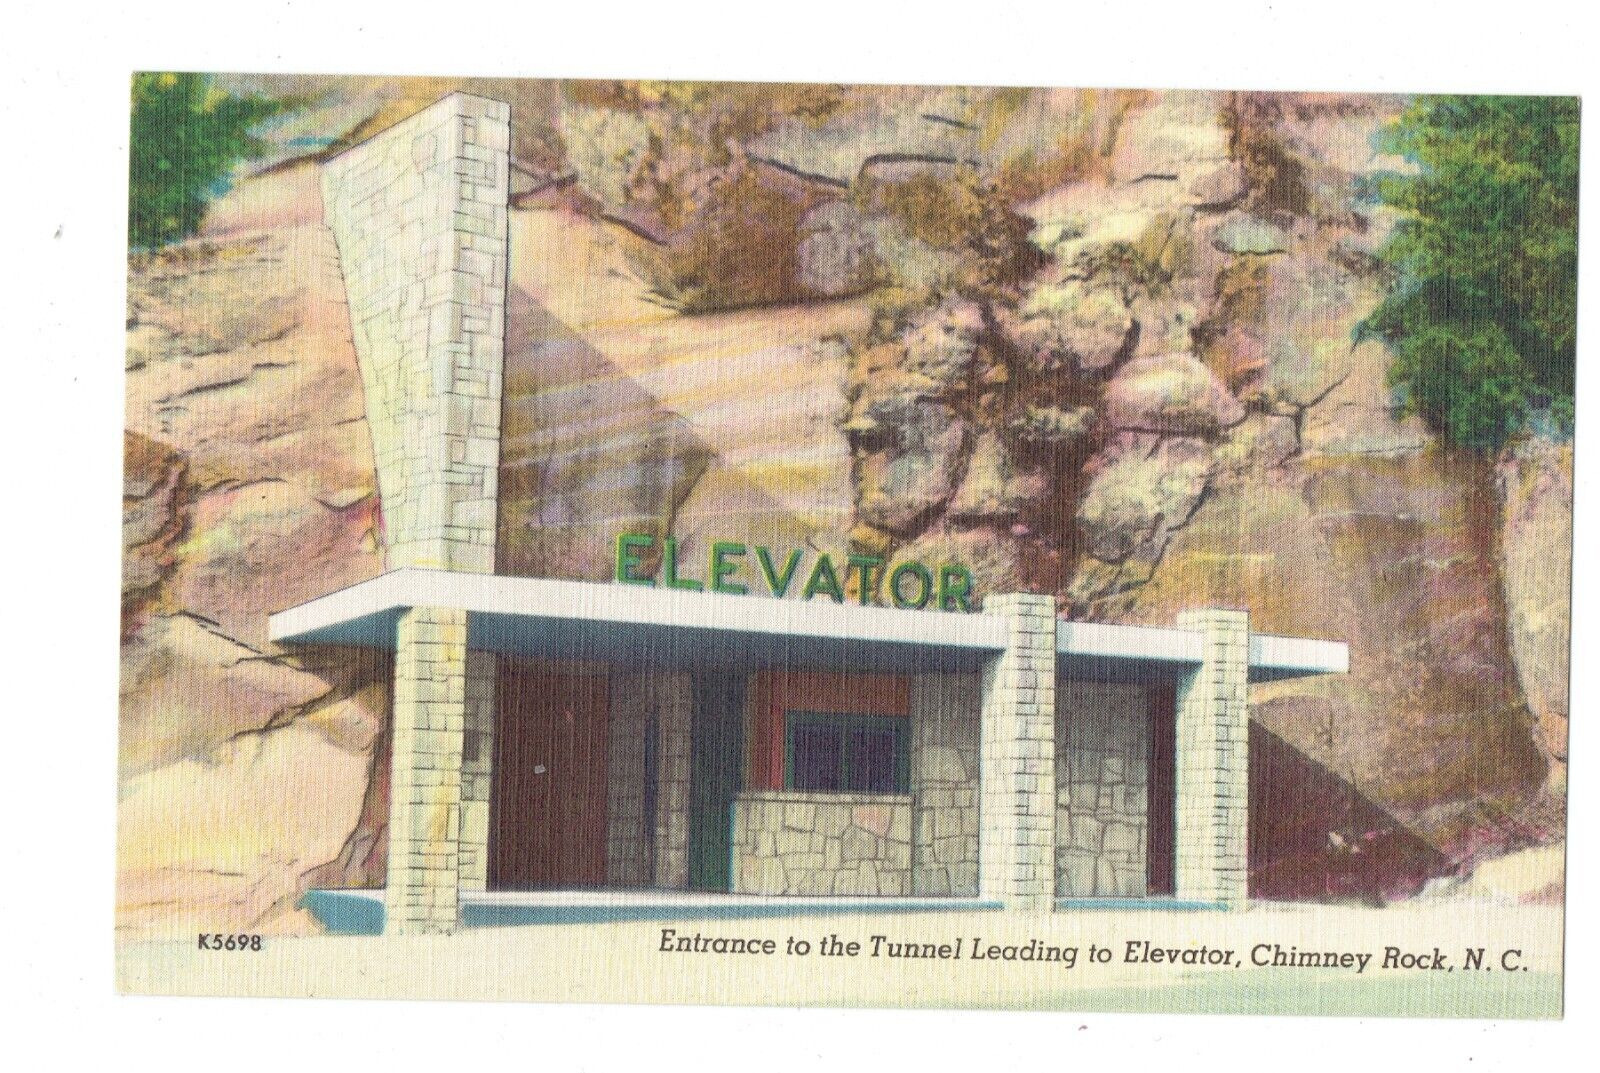 Postcard Vin (1)NC,Chimney Rock Entrance Tunnel Leading/Elevator K5698 UP (676)